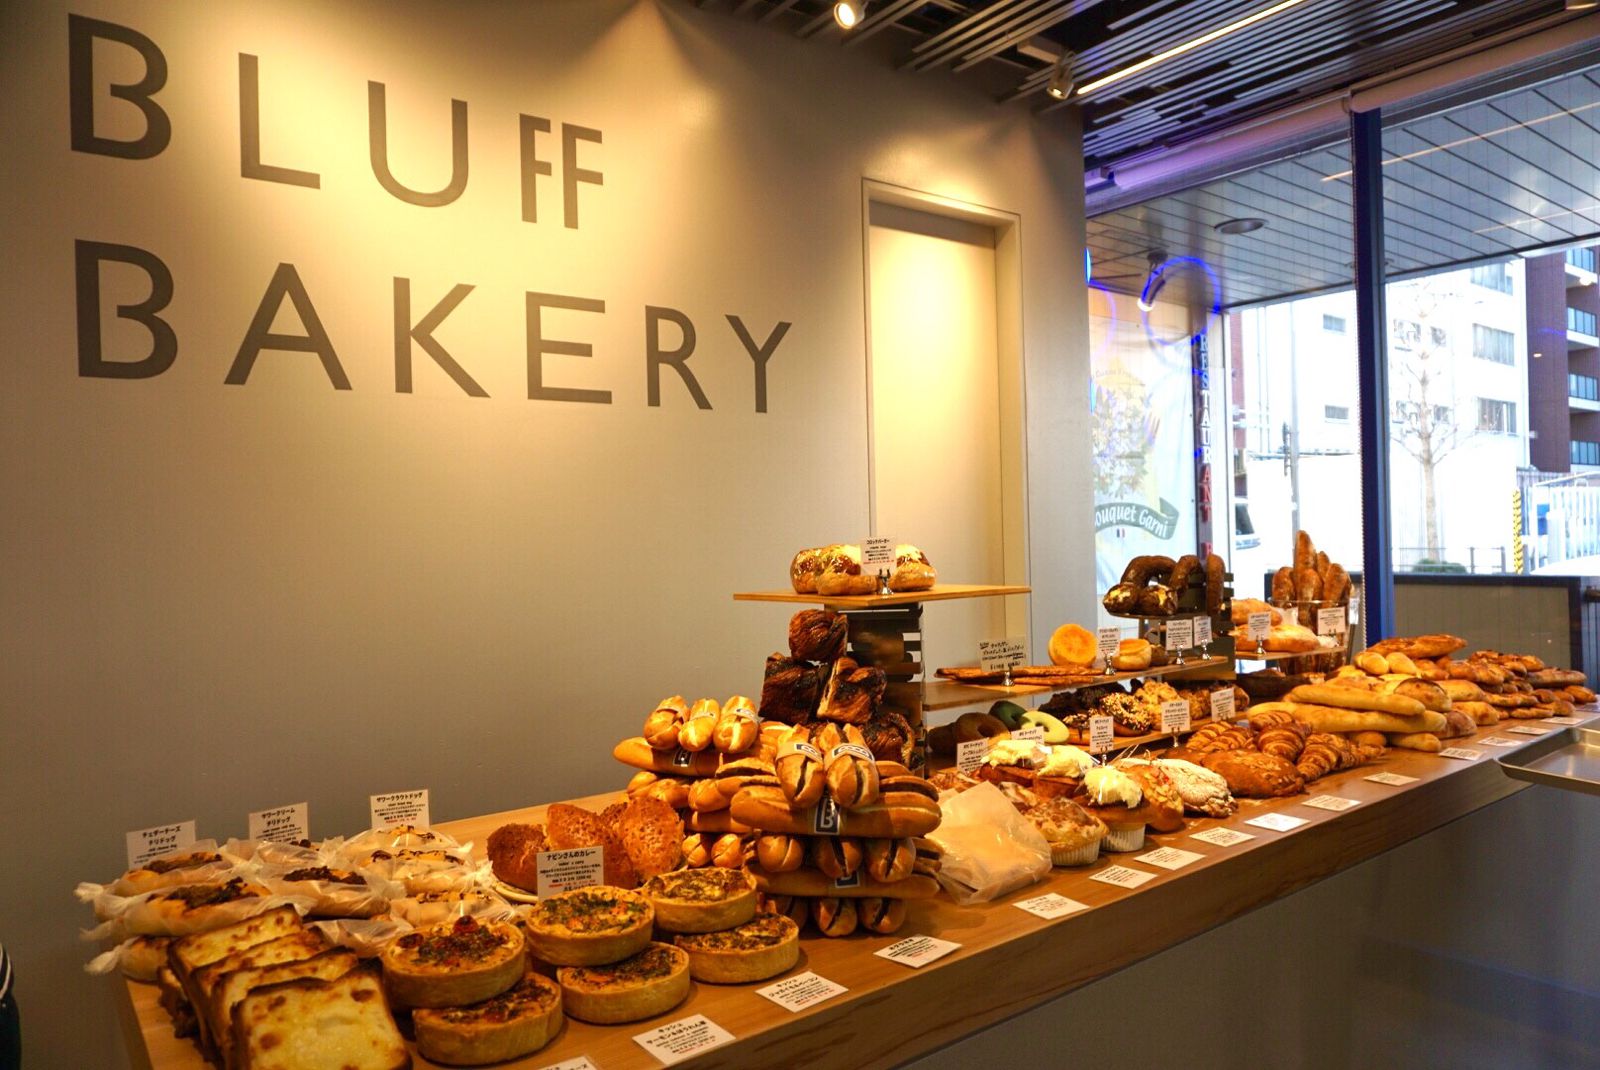 メイン画像 横浜で大人気のオシャレパン屋 Bluff Bakery が素敵すぎ Retrip リトリップ